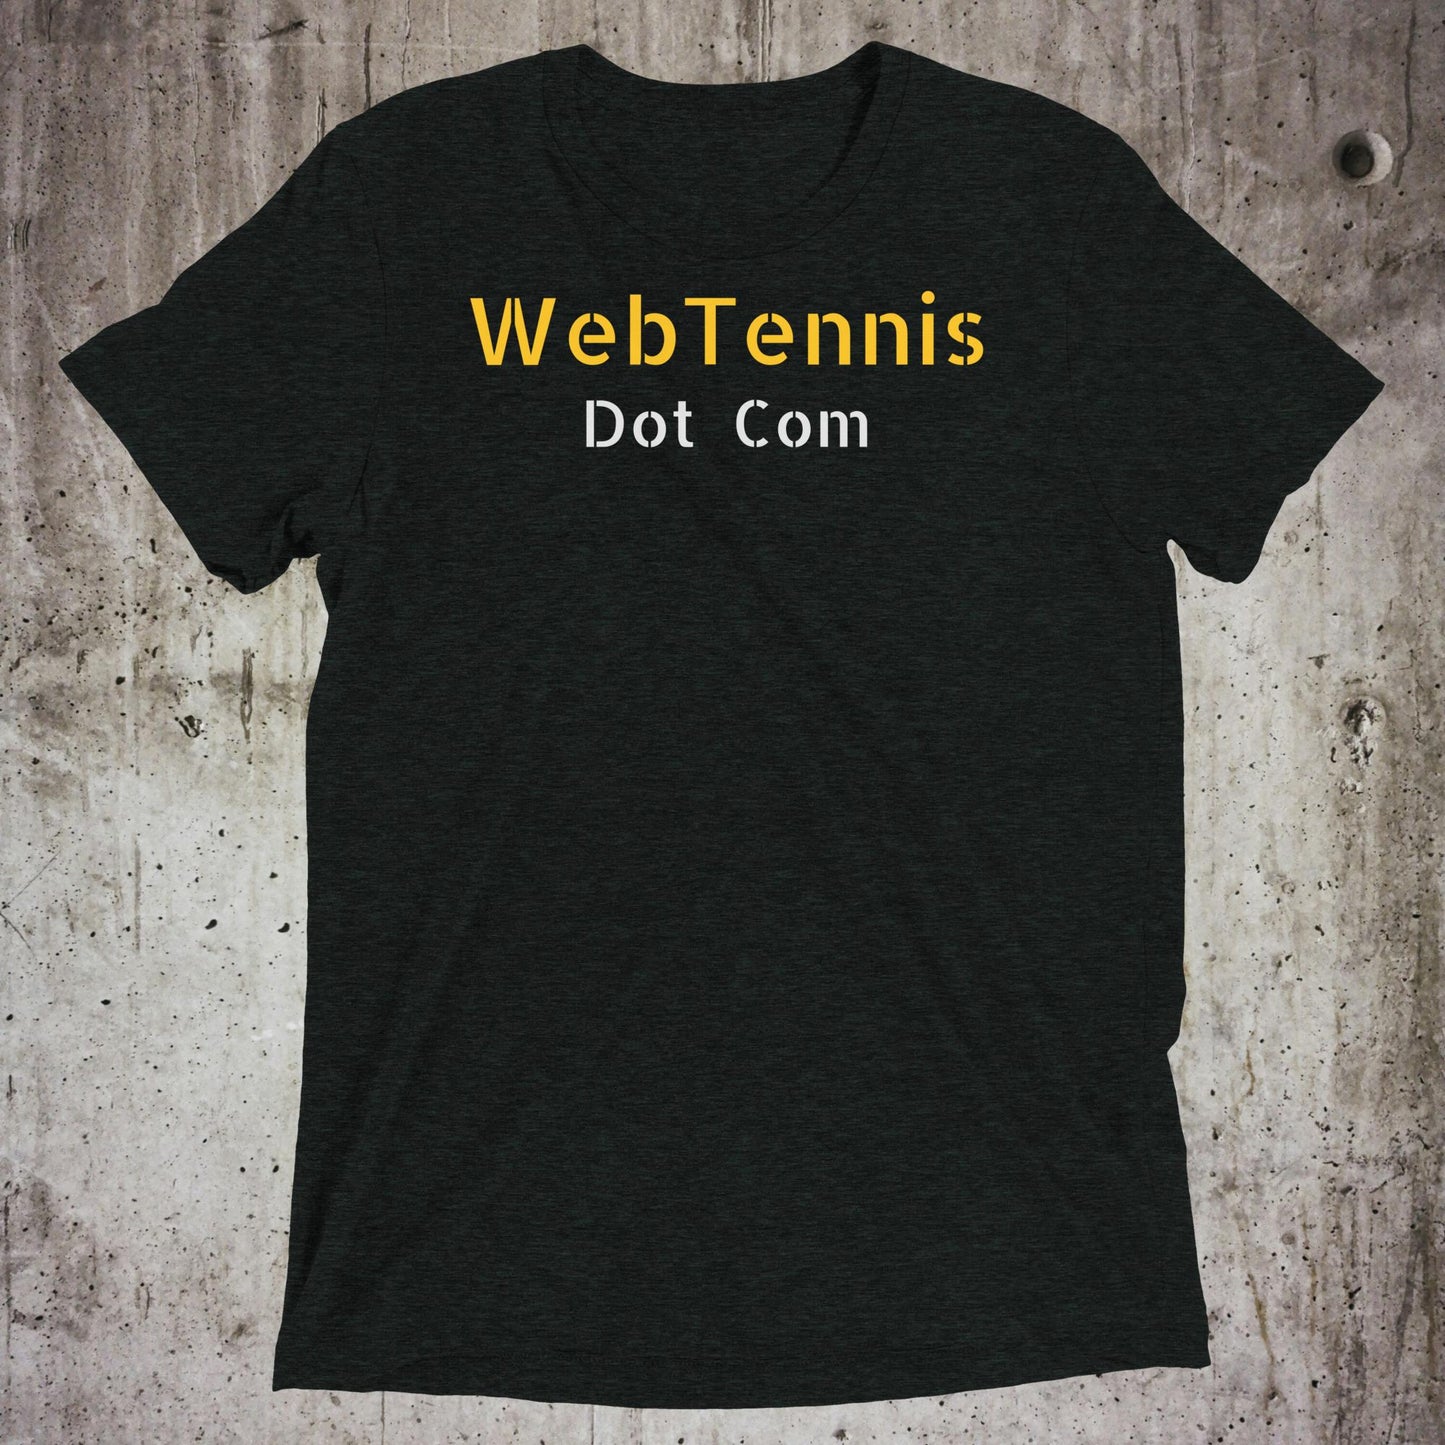 WebTennis.com Short Sleeve T-Shirt